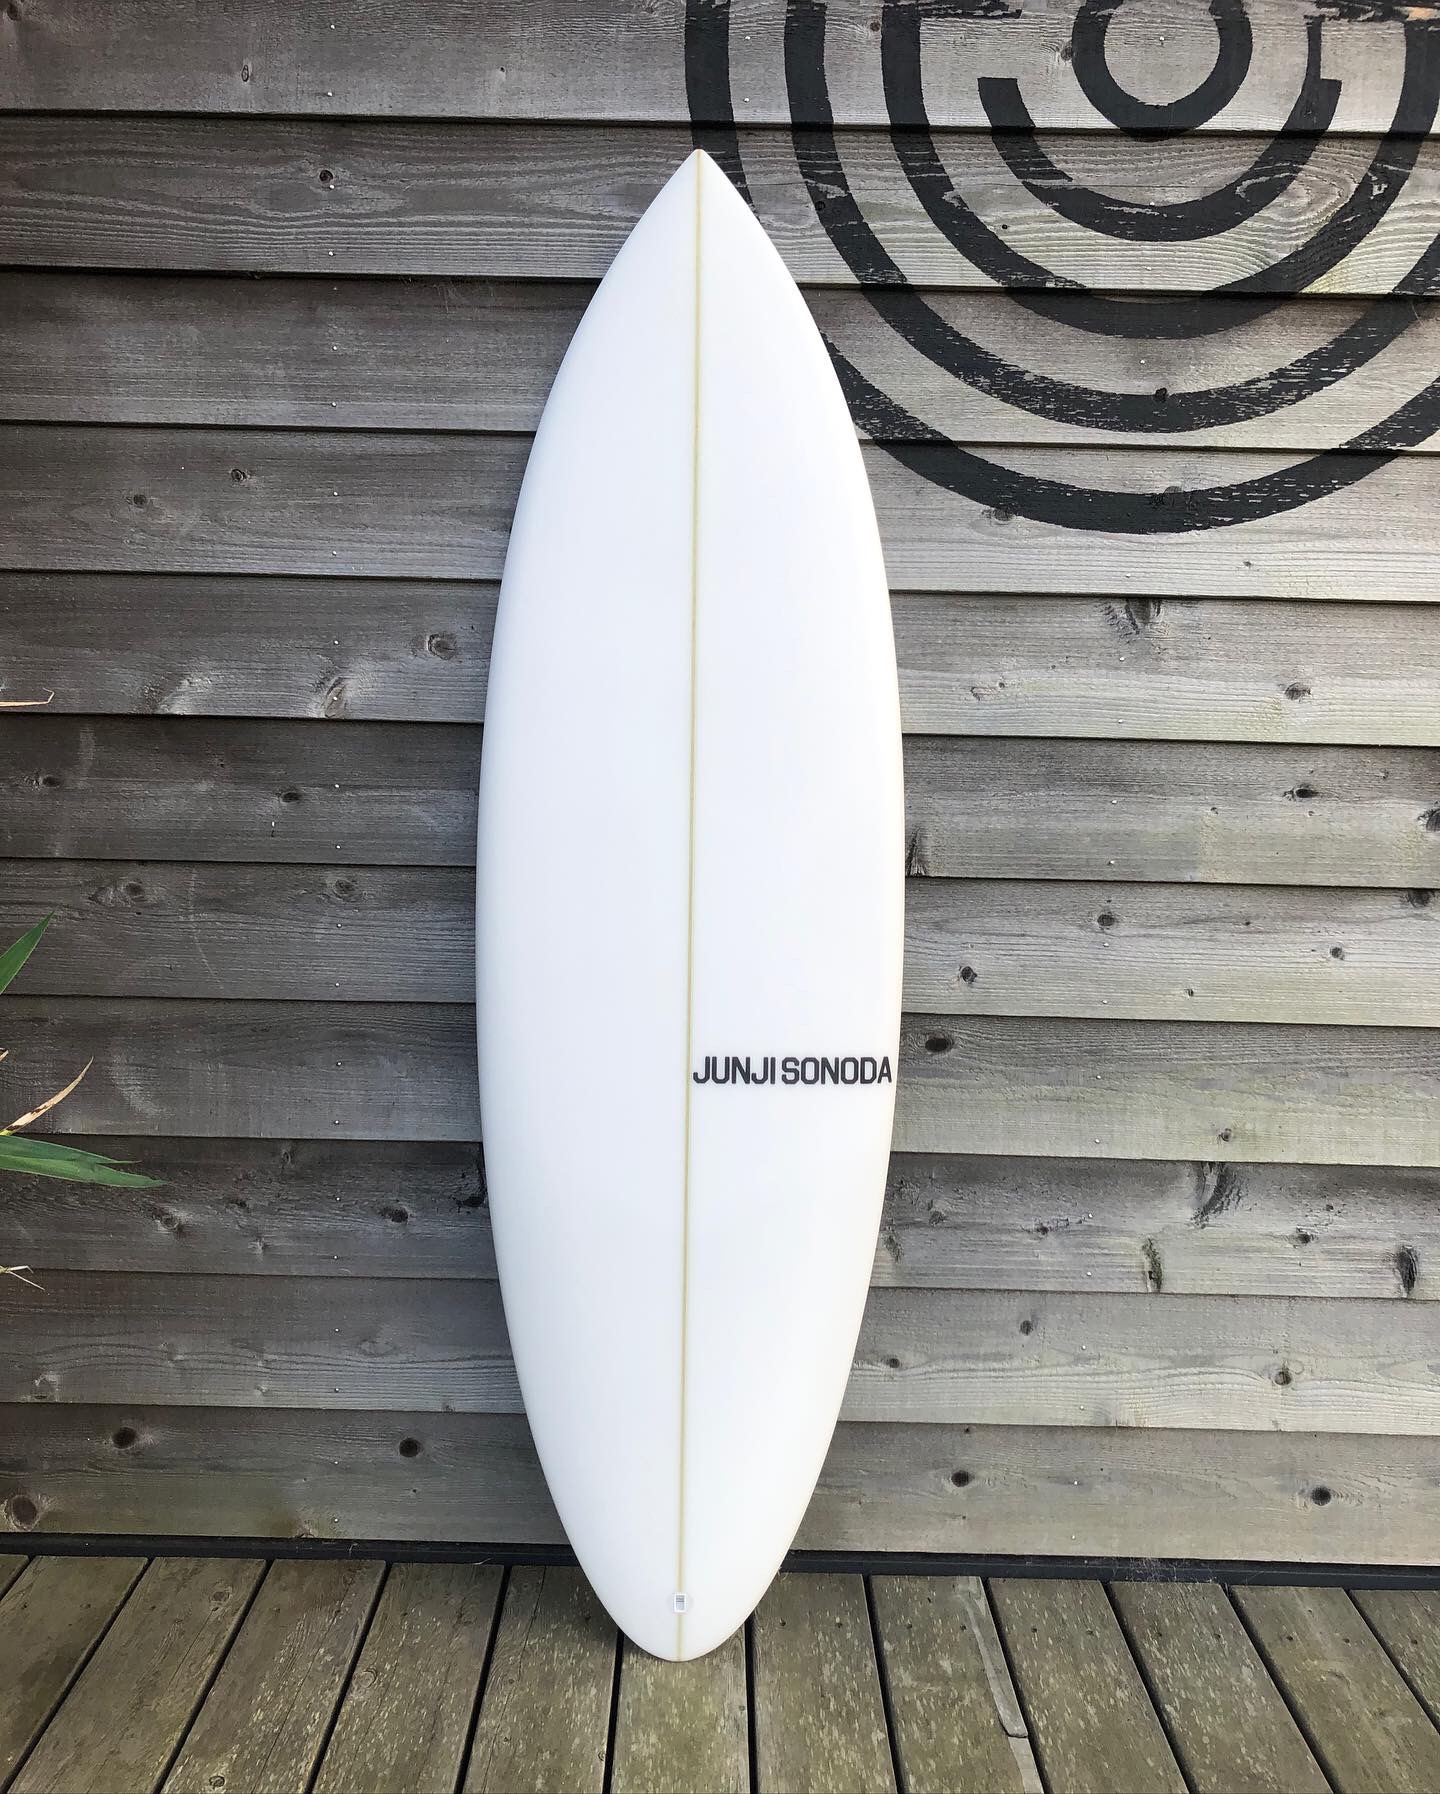 JUNJI SONODA SURFBOARD | STRAY SURF BLOG